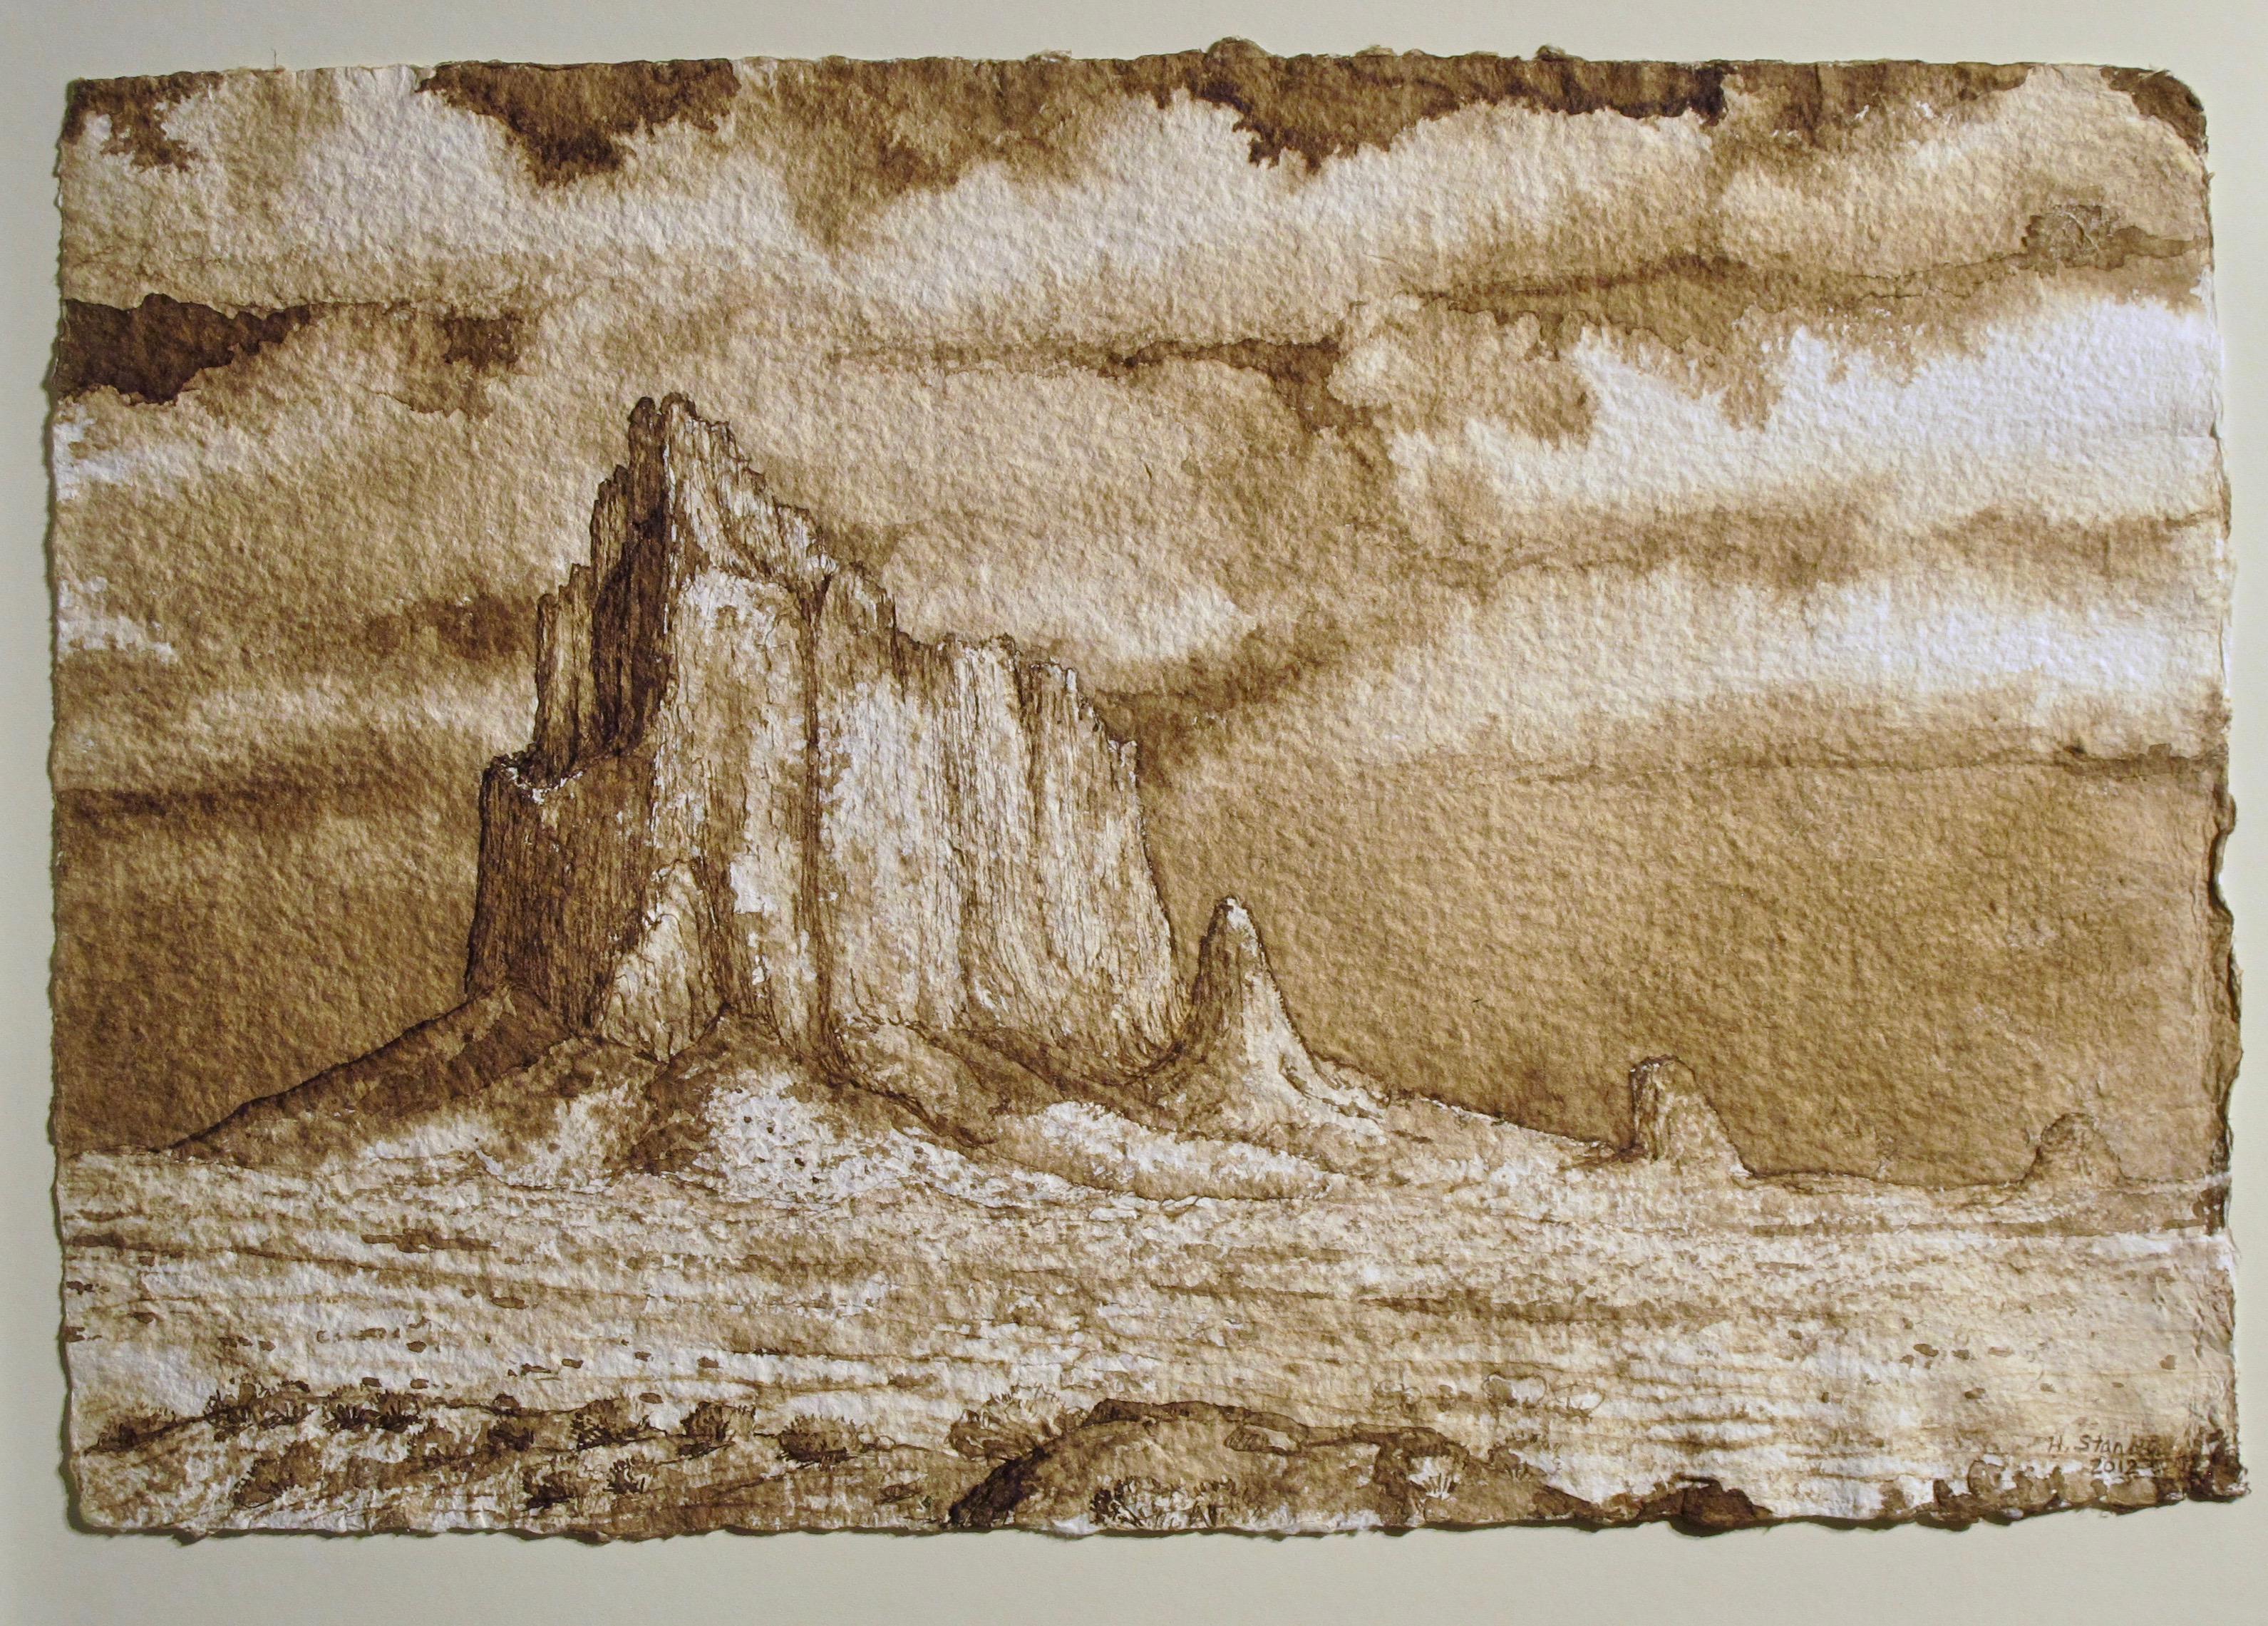 Un autre ensemble de monuments, peinture à l'encre de noyer sur papier, paysage du désert, marron